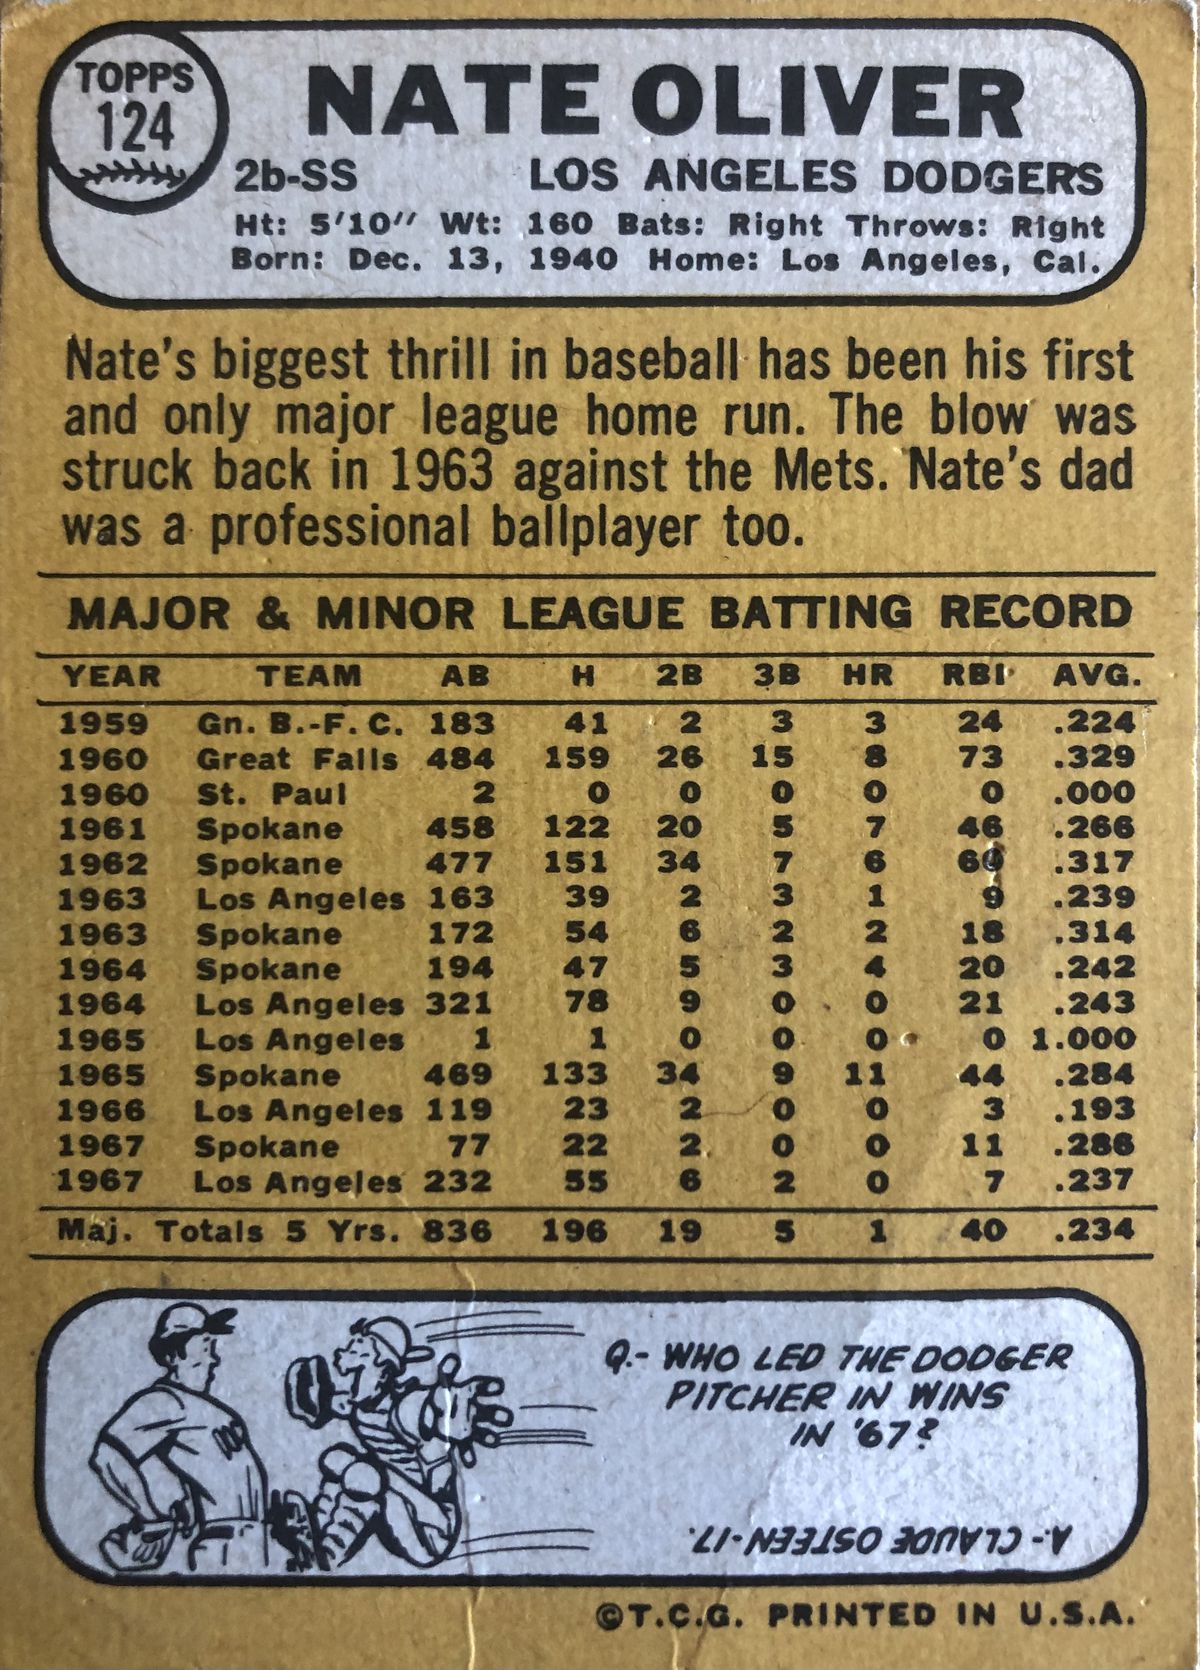 The back of Nate Oliver’s 1968 Topps baseball card.